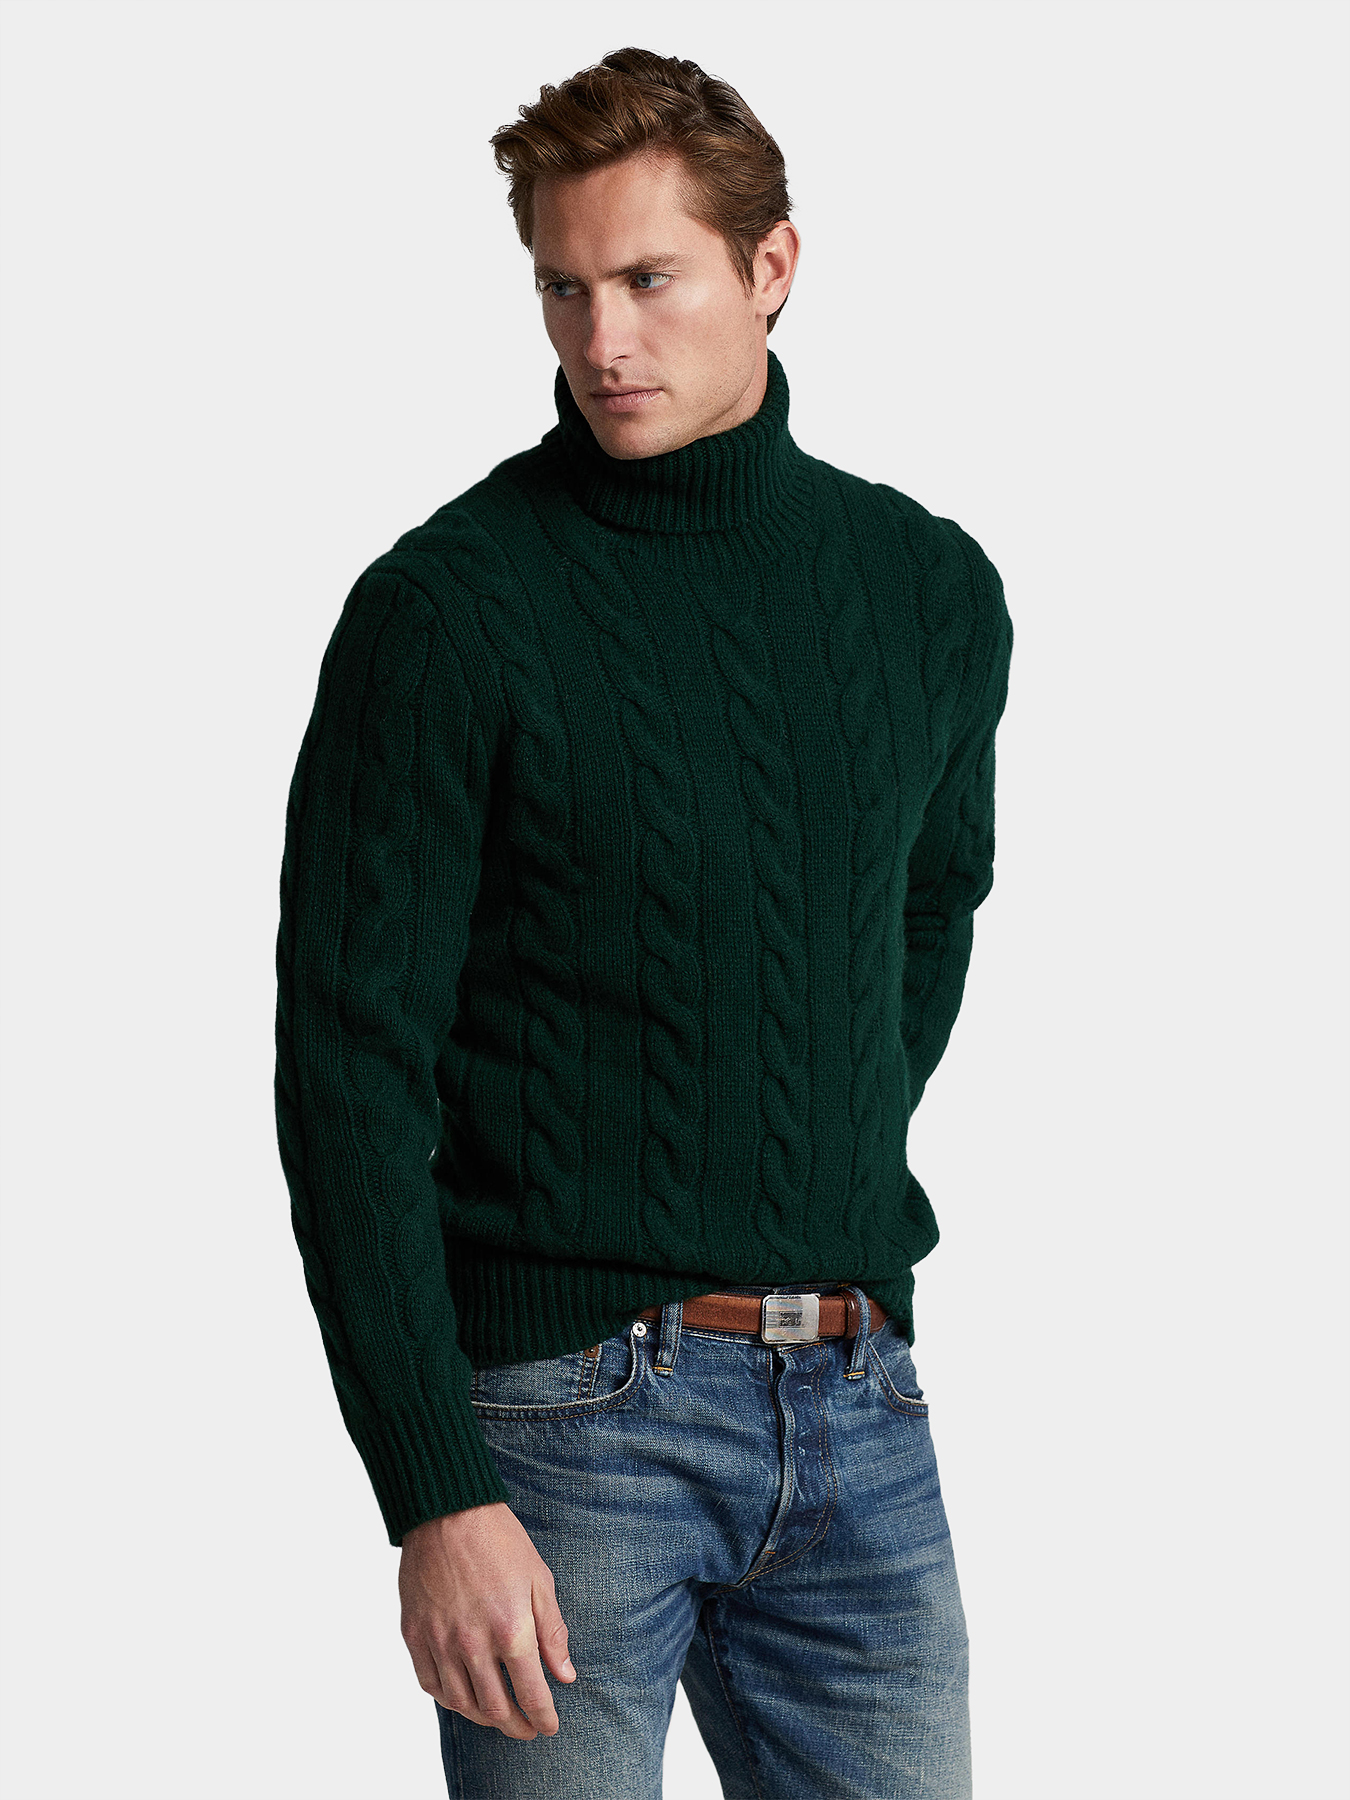 Dark green sweater with turtleneck collar brand POLO RALPH LAUREN —  /en